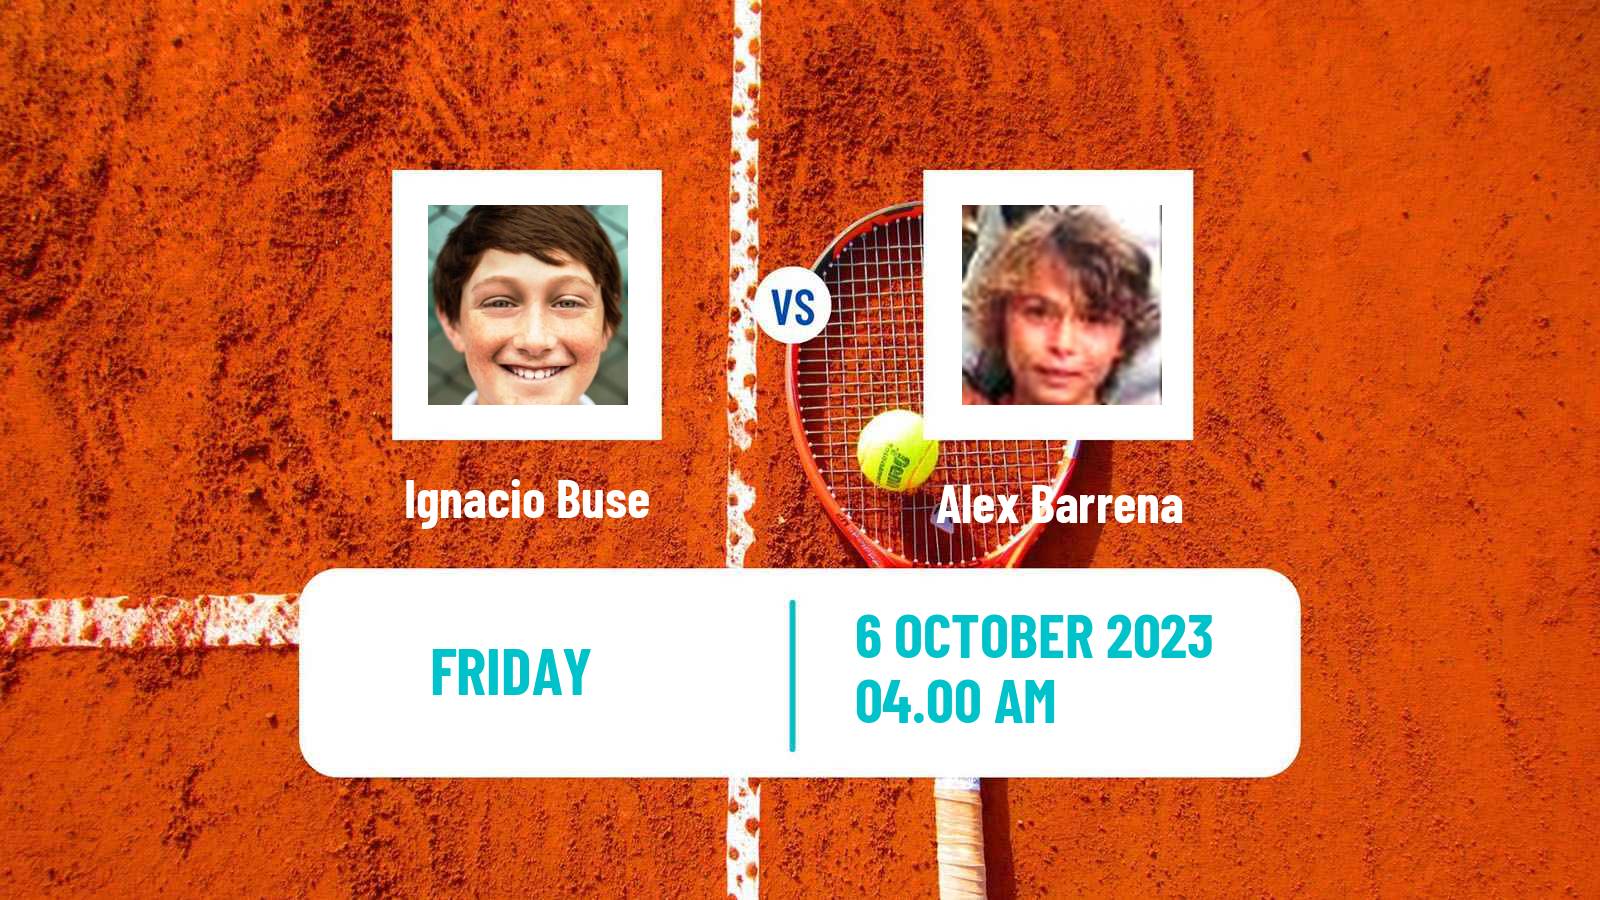 Tennis ITF M25 Mendoza Men Ignacio Buse - Alex Barrena